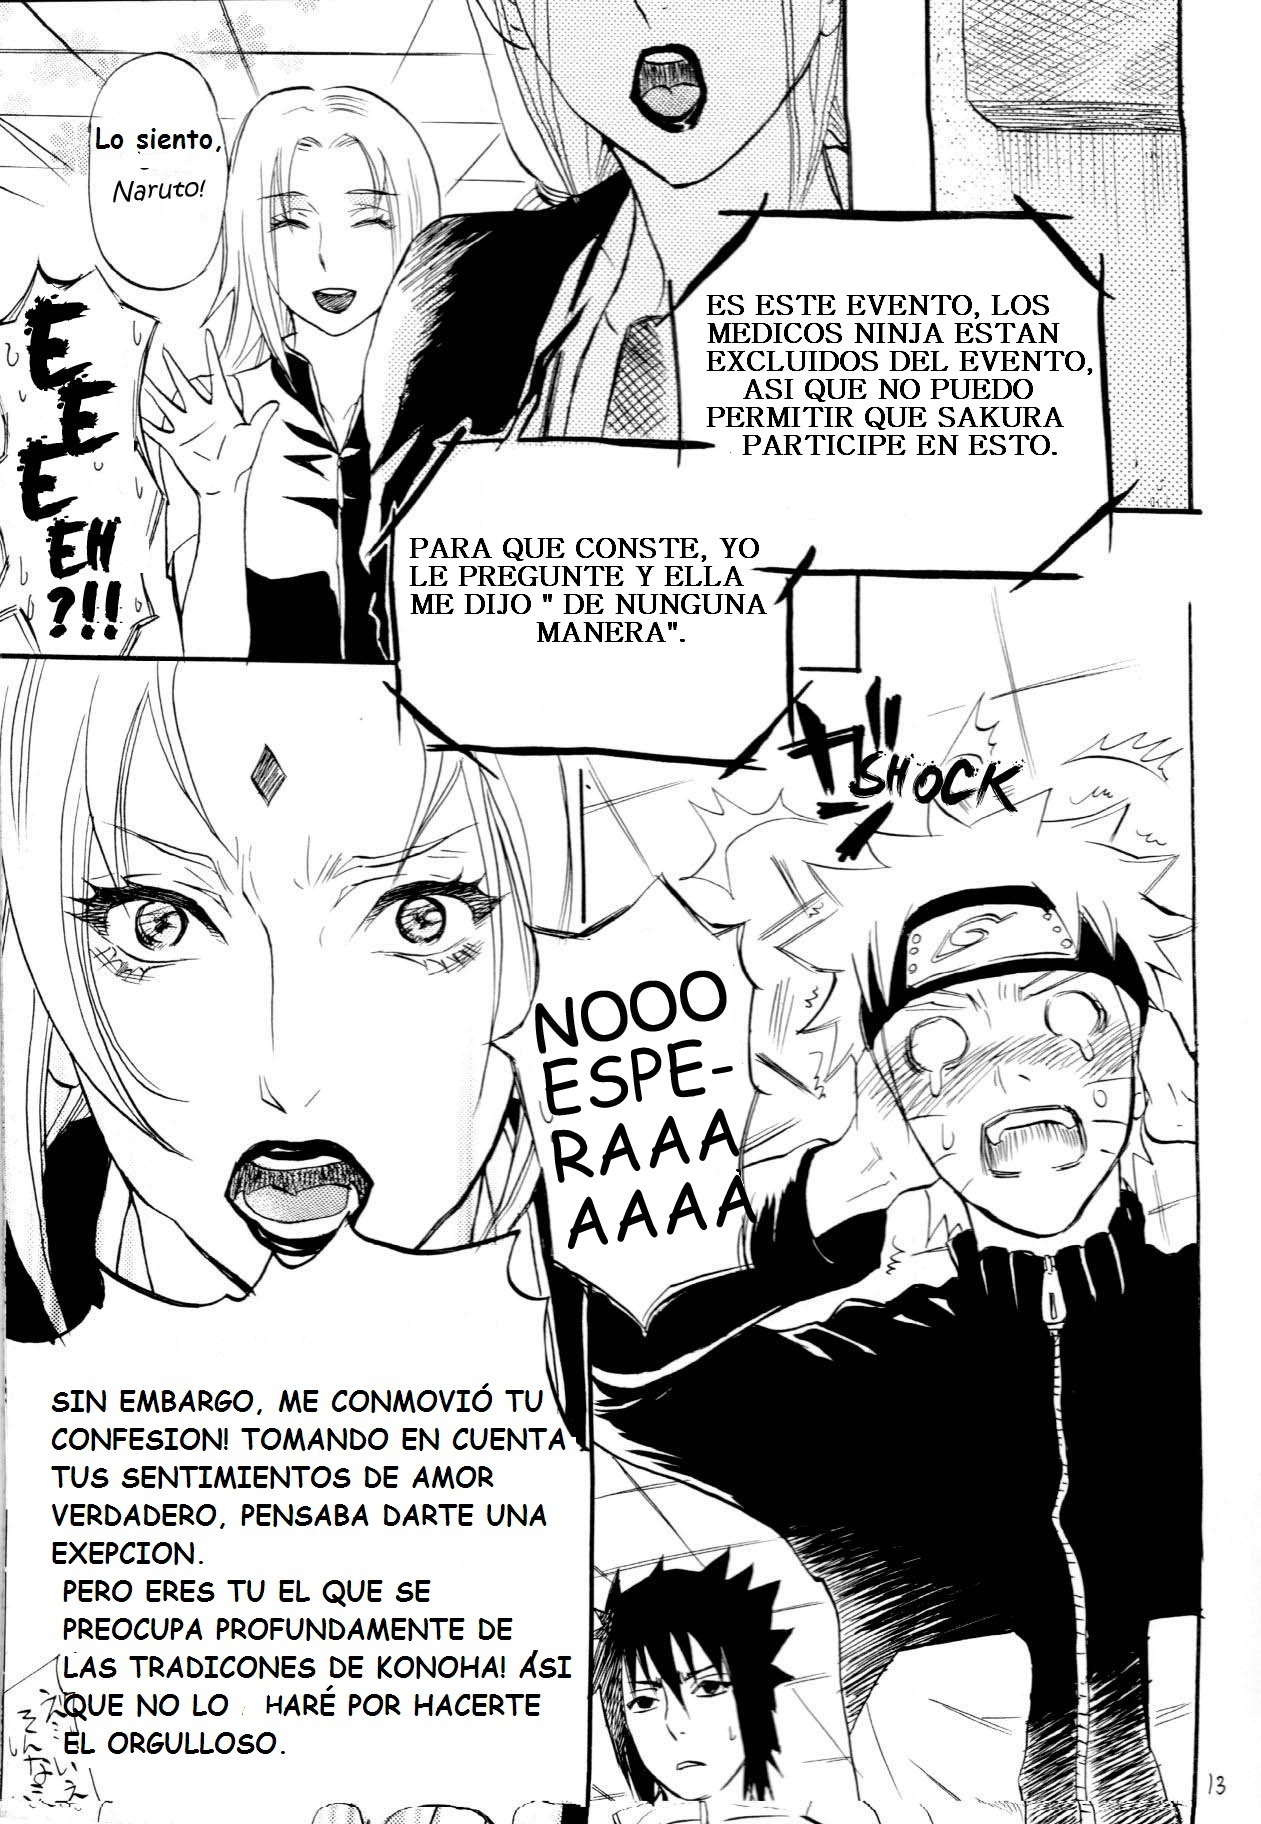 Fude Oroshi no Gi (Naruto Manga Yaoi) - 12 - Comics Porno - Hentai Manga - Cartoon XXX